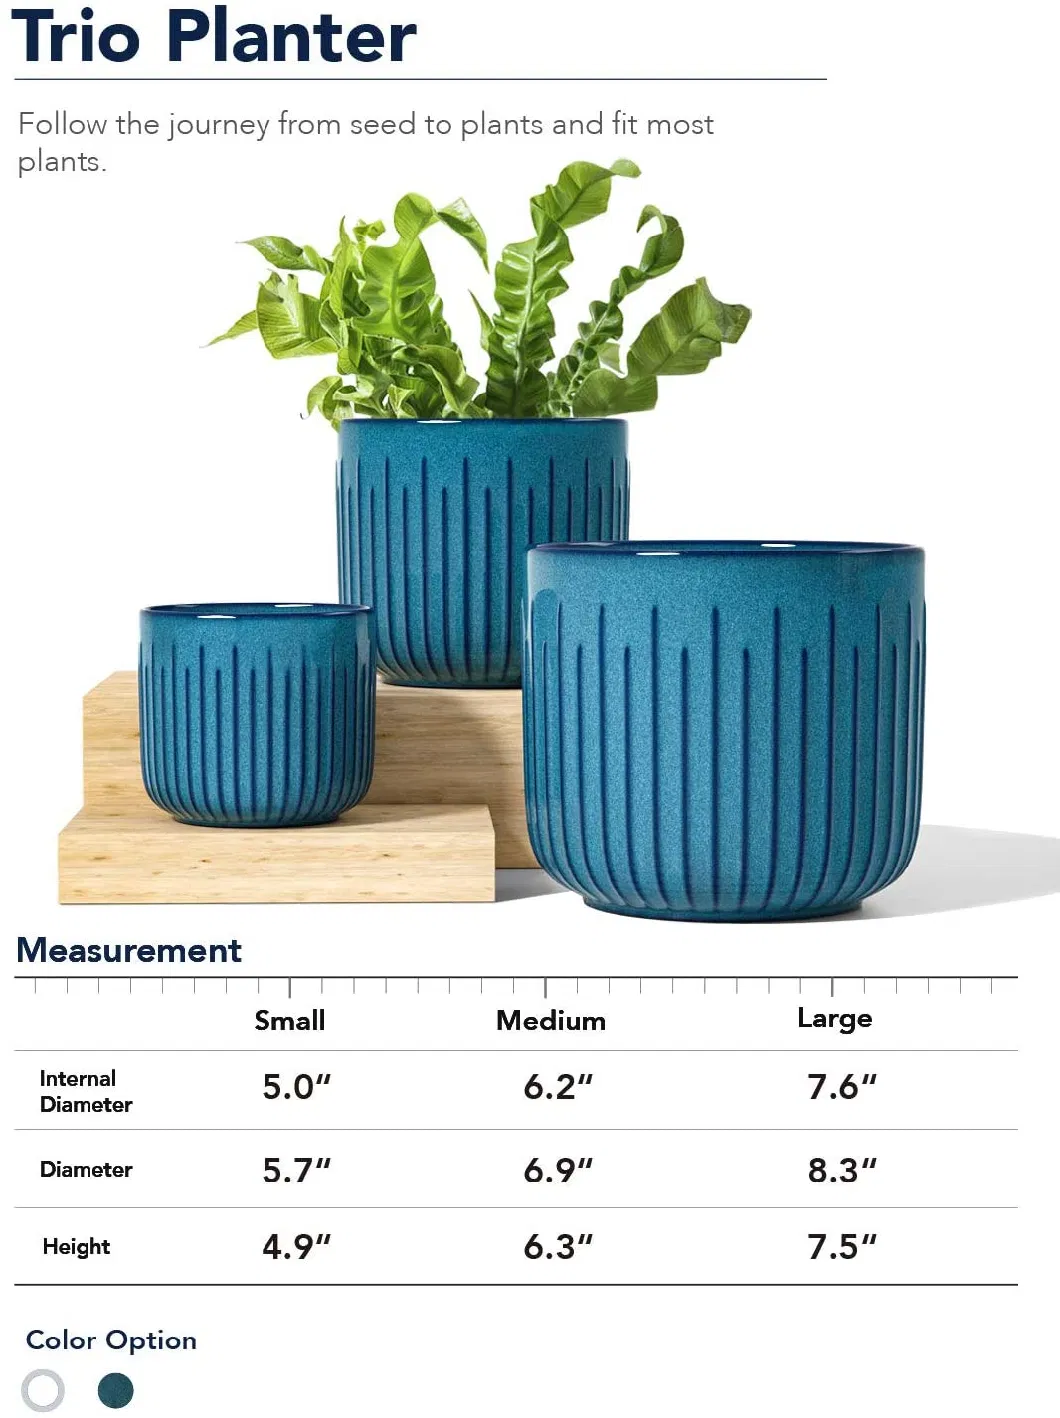 Large Planter Ceramic Flower Pot for Plants with Drainage Holes Garden Pots Porcelain Planters Outdoor Indoor House Plants Set of 3 Reactive Glaze Blue